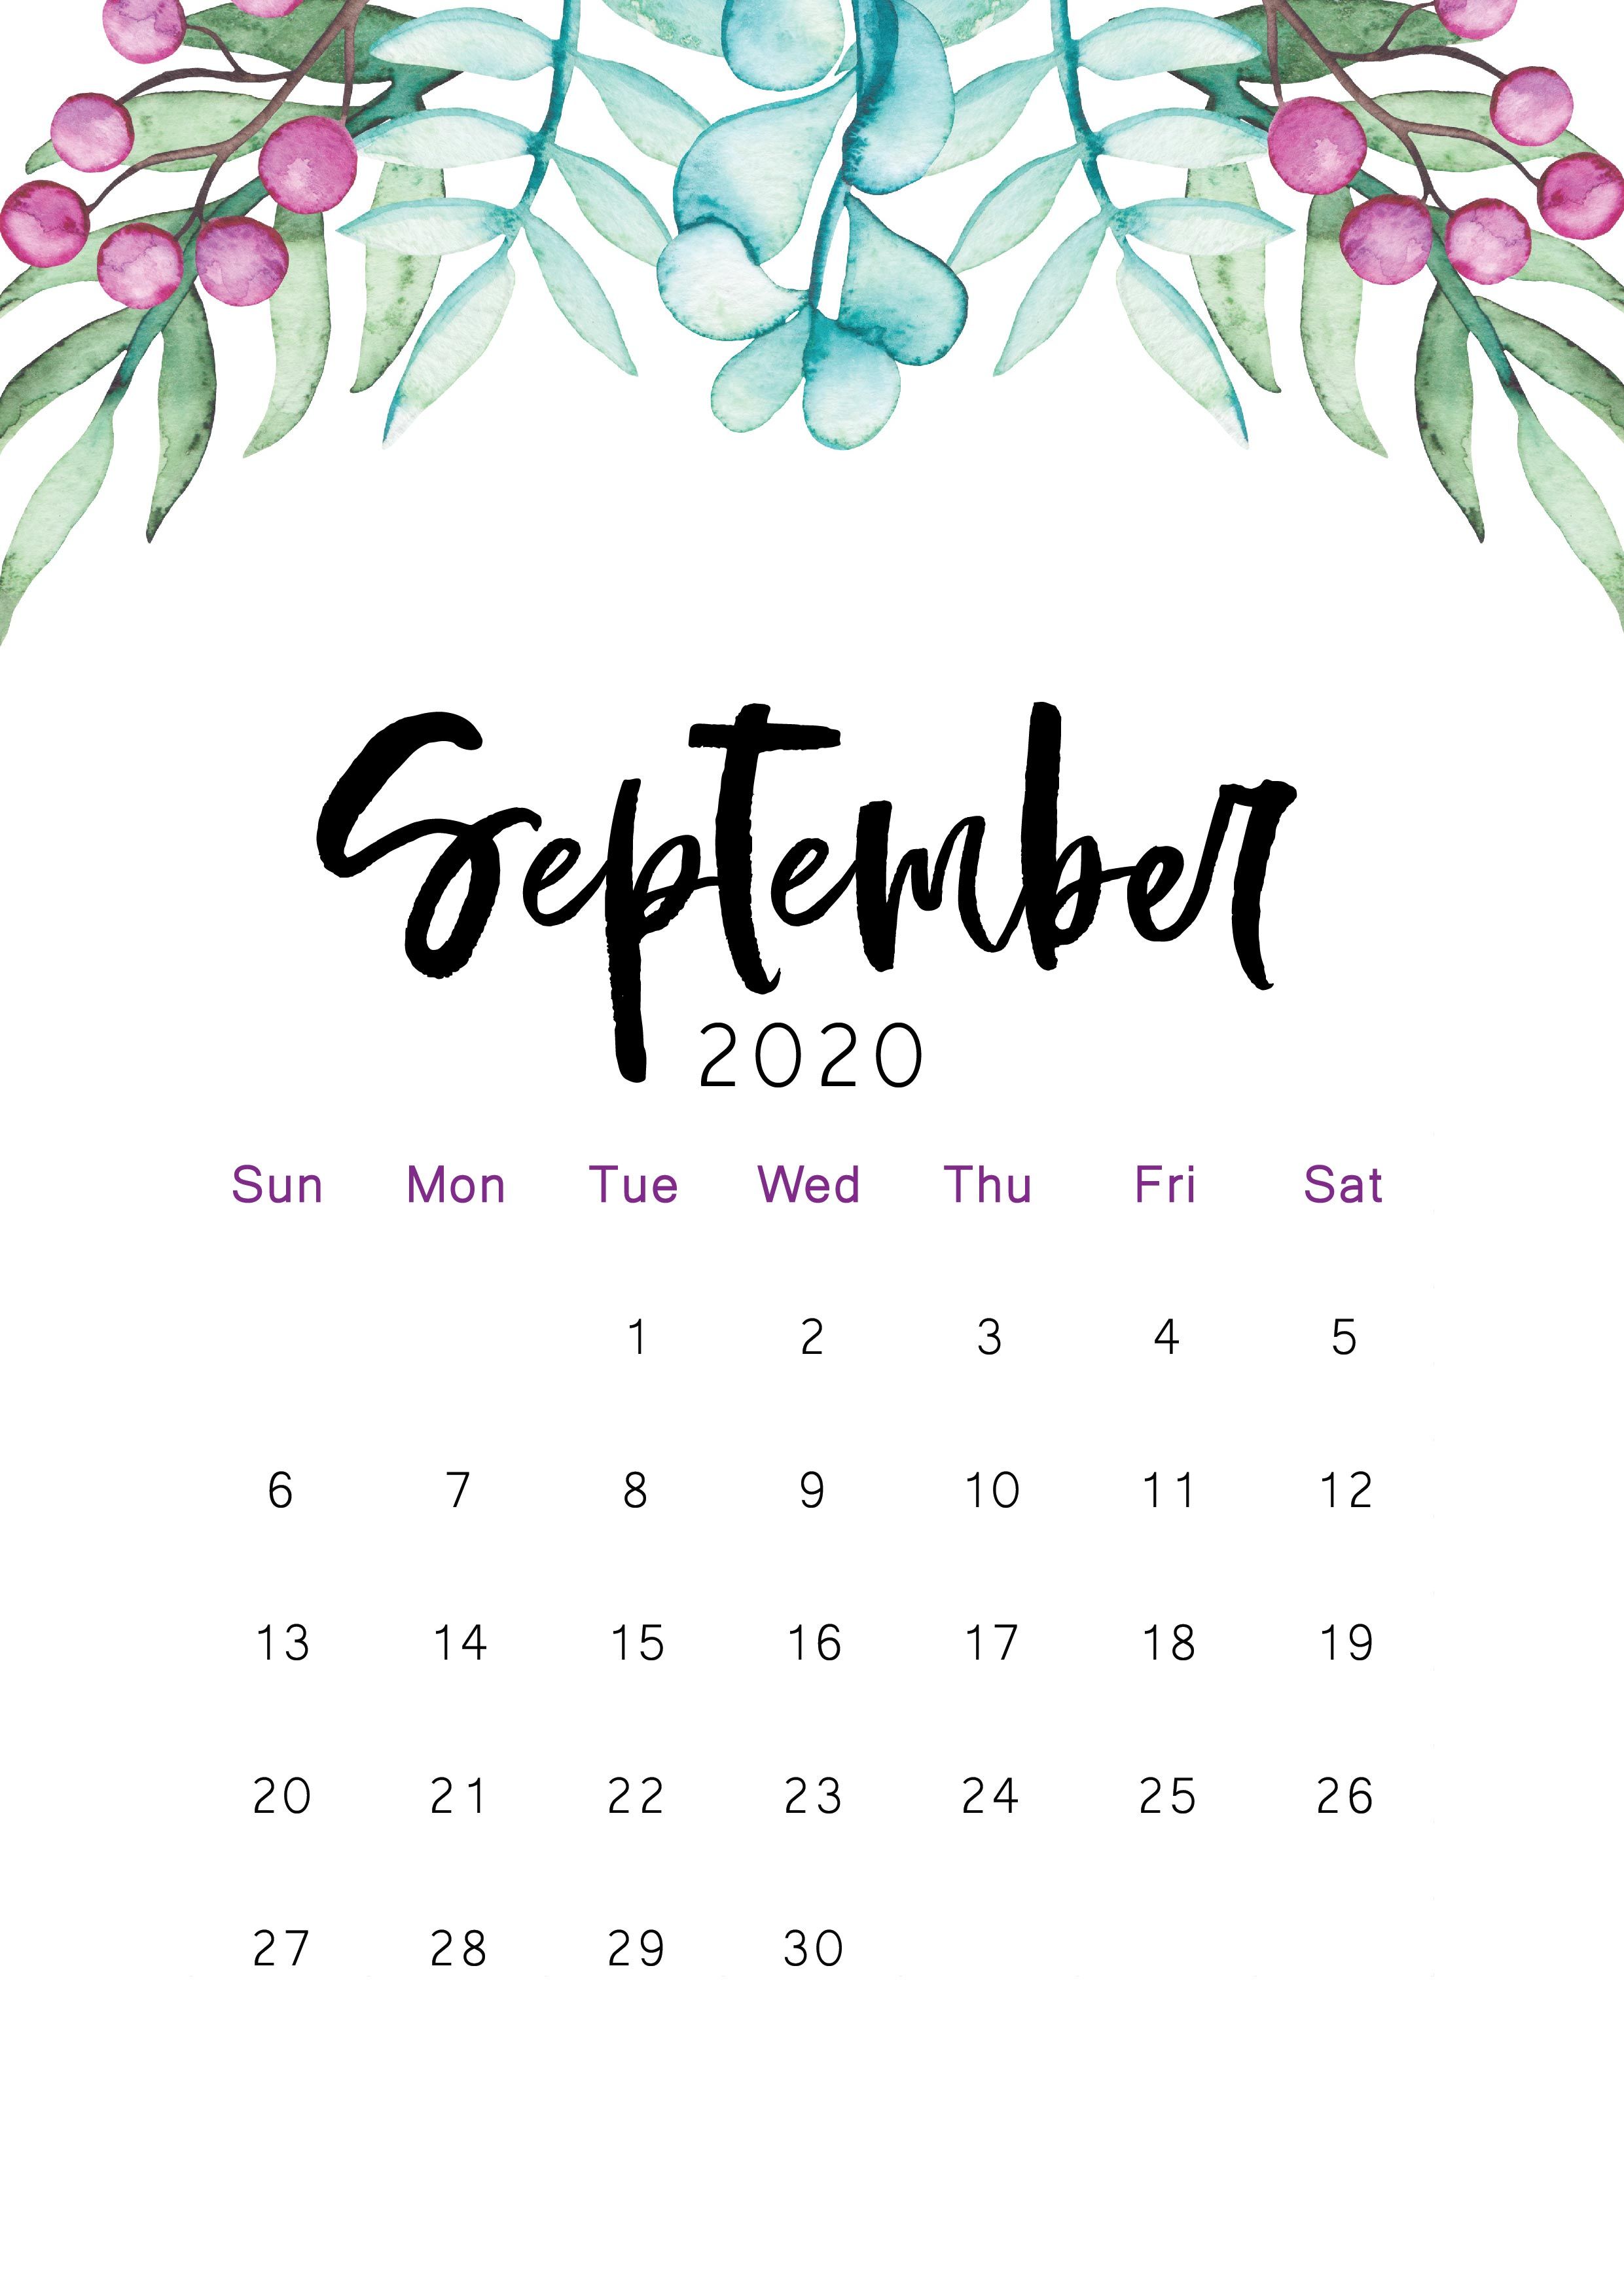 September 2020 Calendar Wallpapers Wallpaper Cave